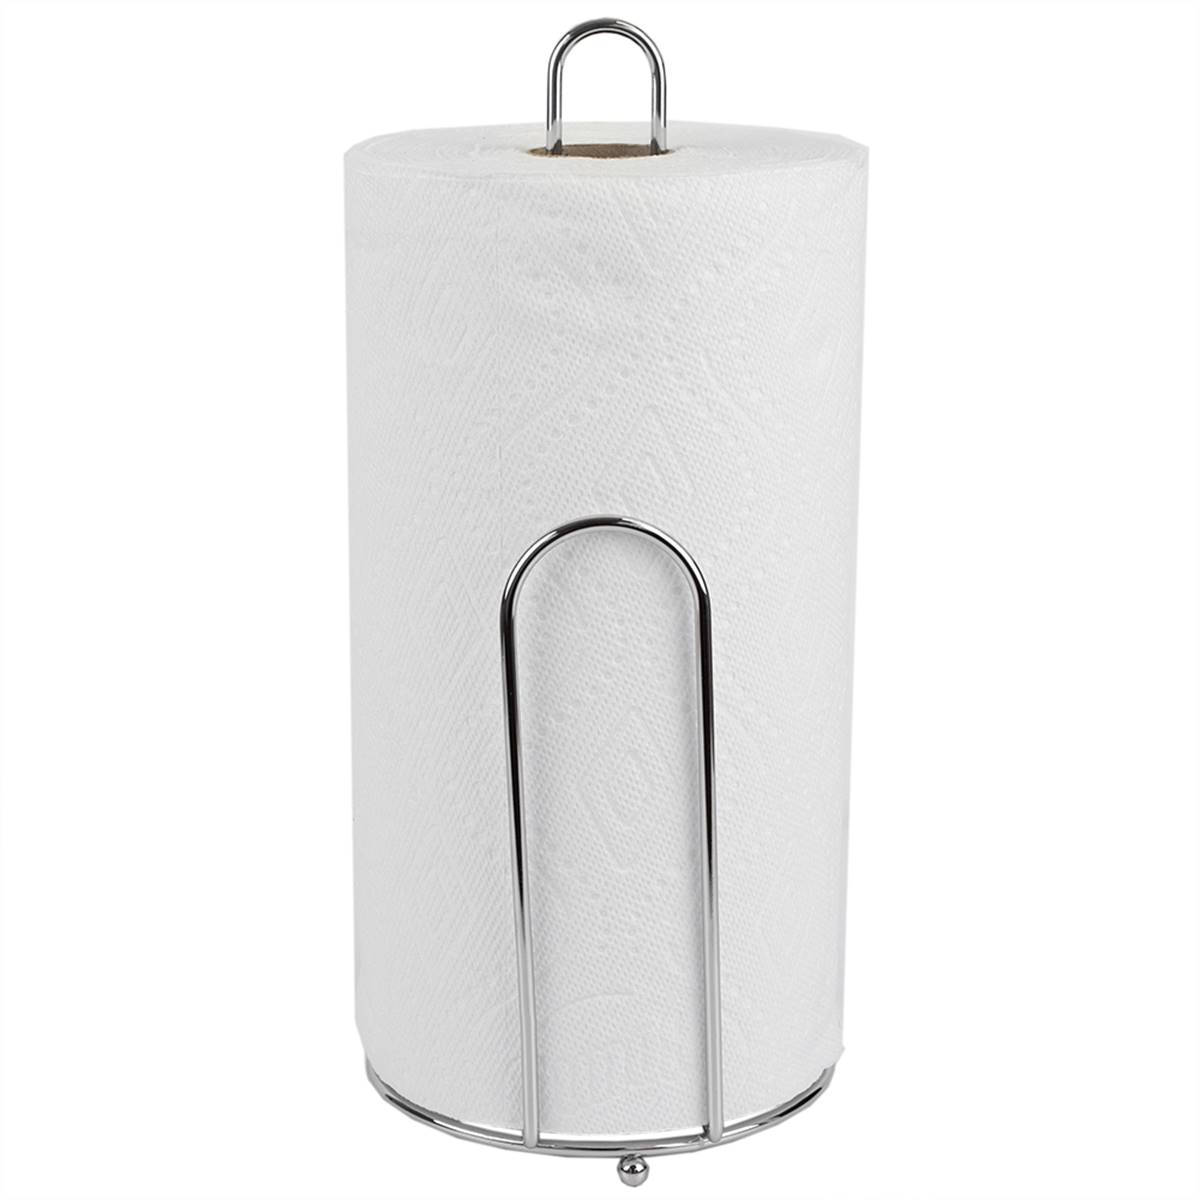 Home Basics Chrome Paper Towel Holder